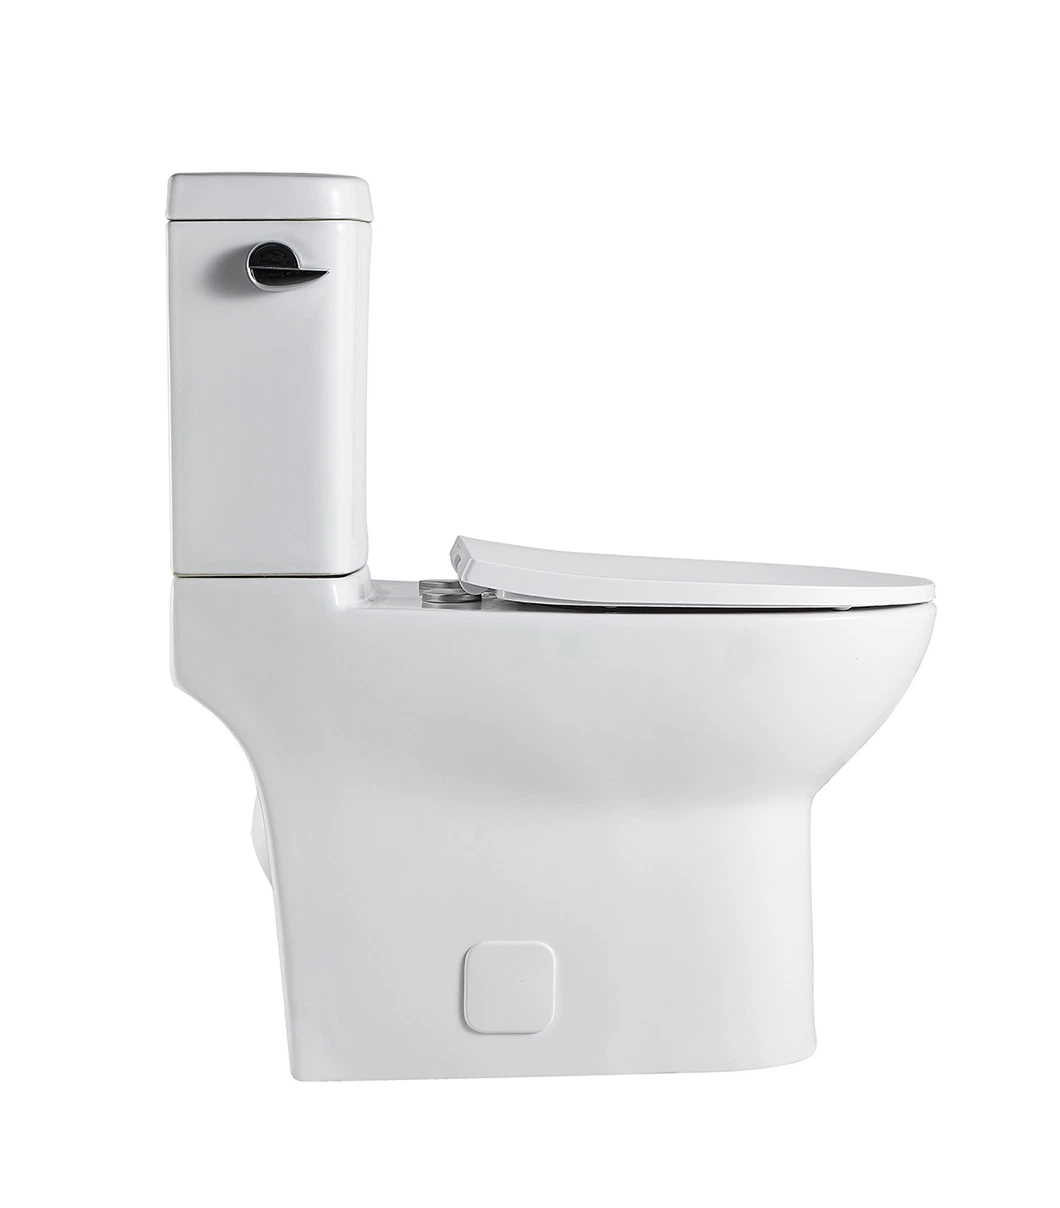 Seite Flush Keramik Wc Wasser Schrank Badezimmer Dual Flush Wc. Schüssel Sanitärware Großhandel/Lieferant